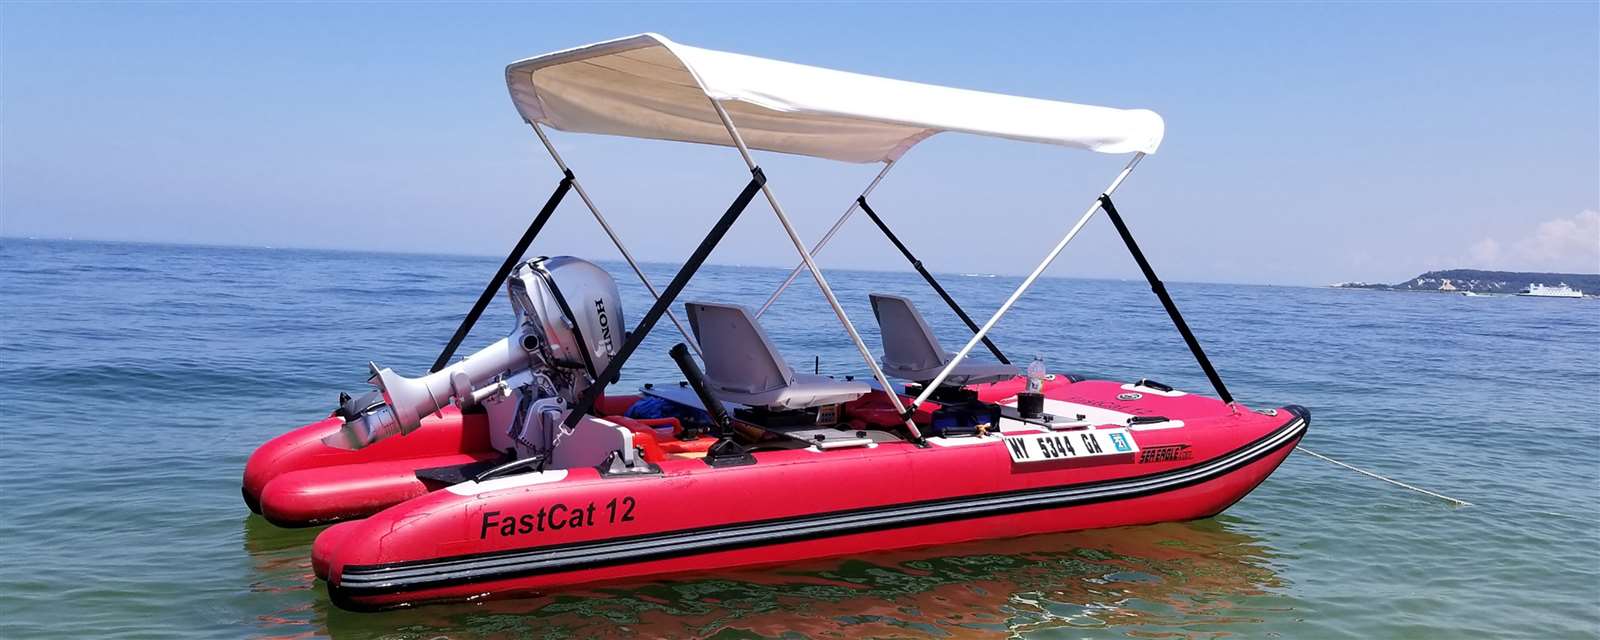 sea eagle fastcat12 catamaran inflatable boat